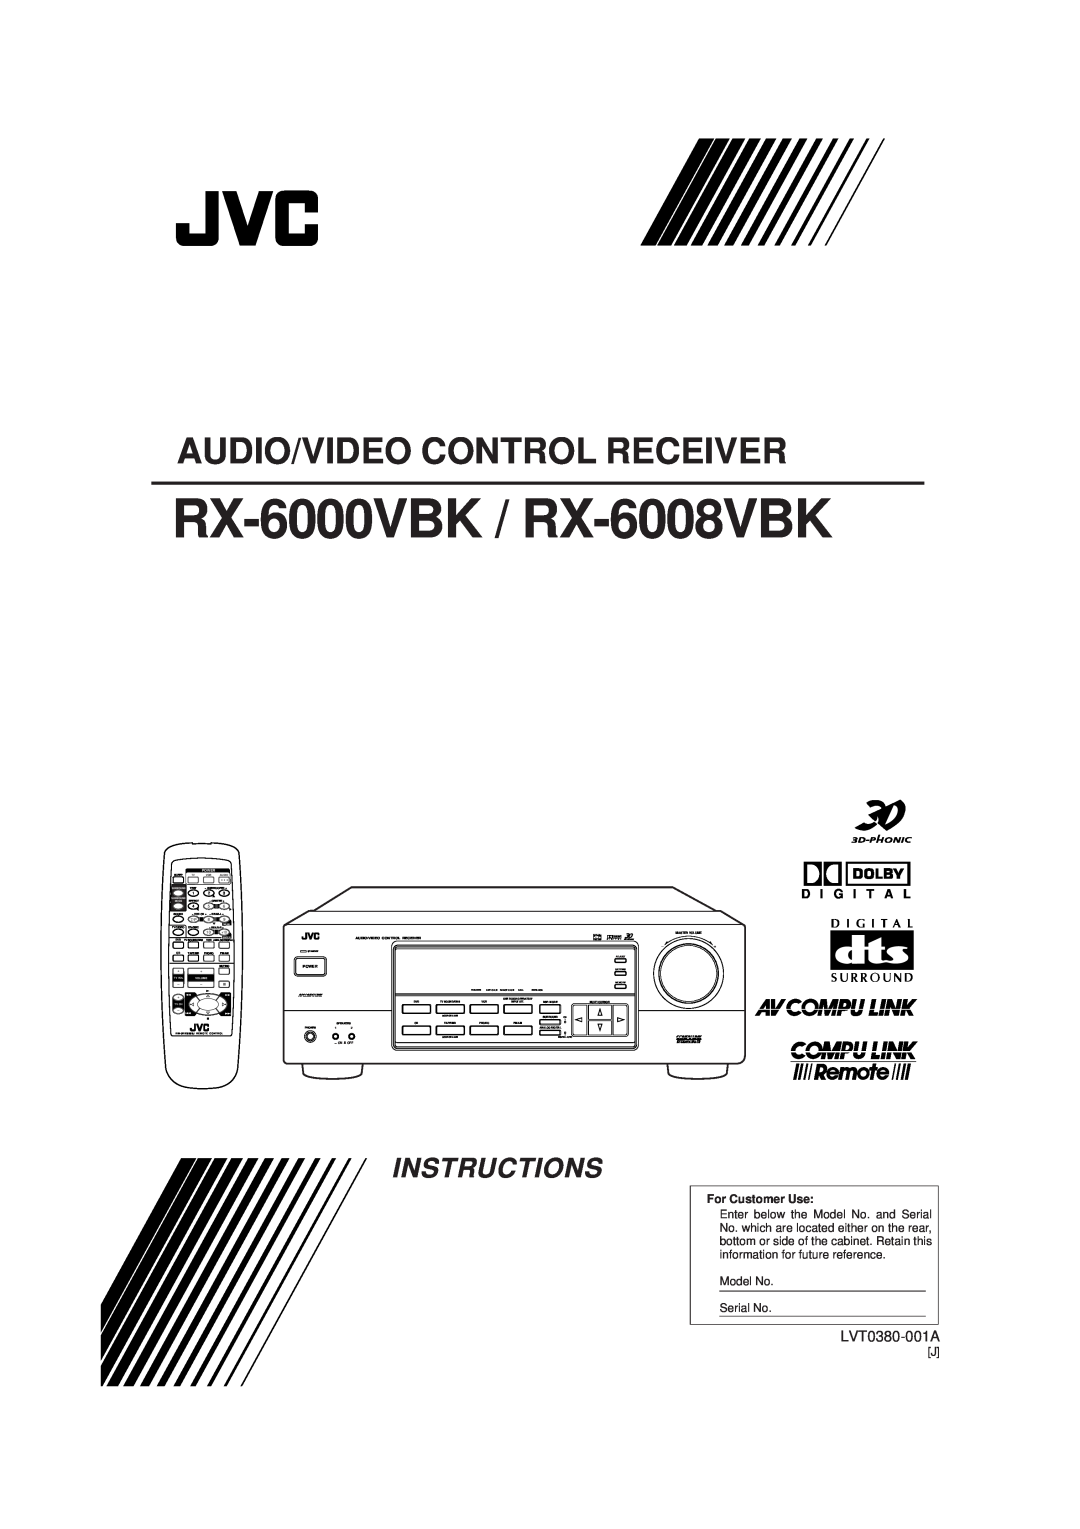 JVC manual Audio/Video Control Receiver, RX-6000VBK / RX-6008VBK, Instructions, LVT0380-001A, D I G I T A L, Power 